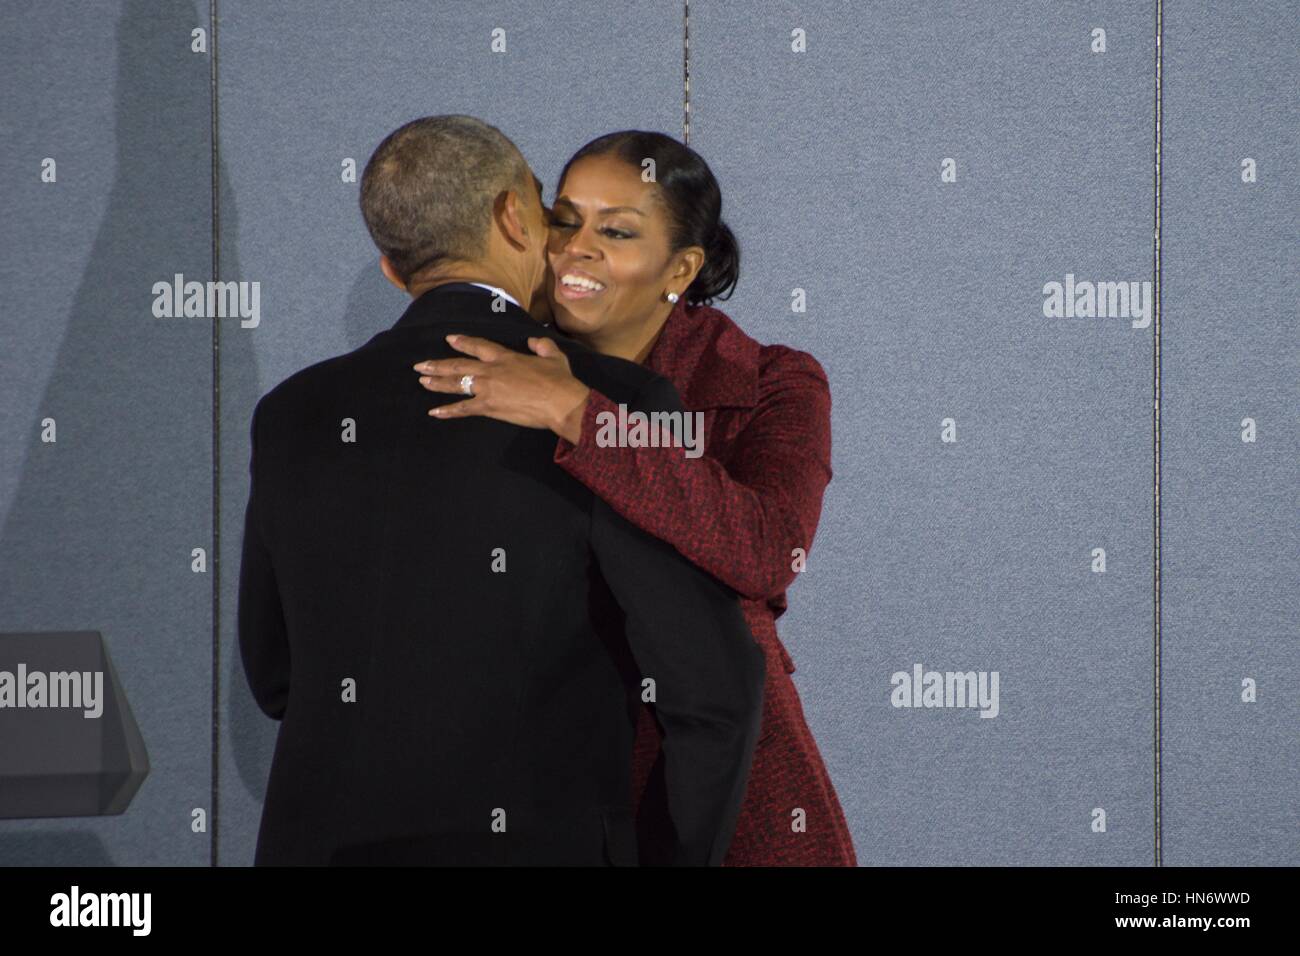 L'ancien Président des États-Unis, Barack Obama, épouse sa femme Michelle Obama après son discours d'adieu à Joint Base Andrews le 20 janvier 2017 dans le Maryland. (Photo par Ryan J. Sonnier/US Air Force par Planetpix) Banque D'Images